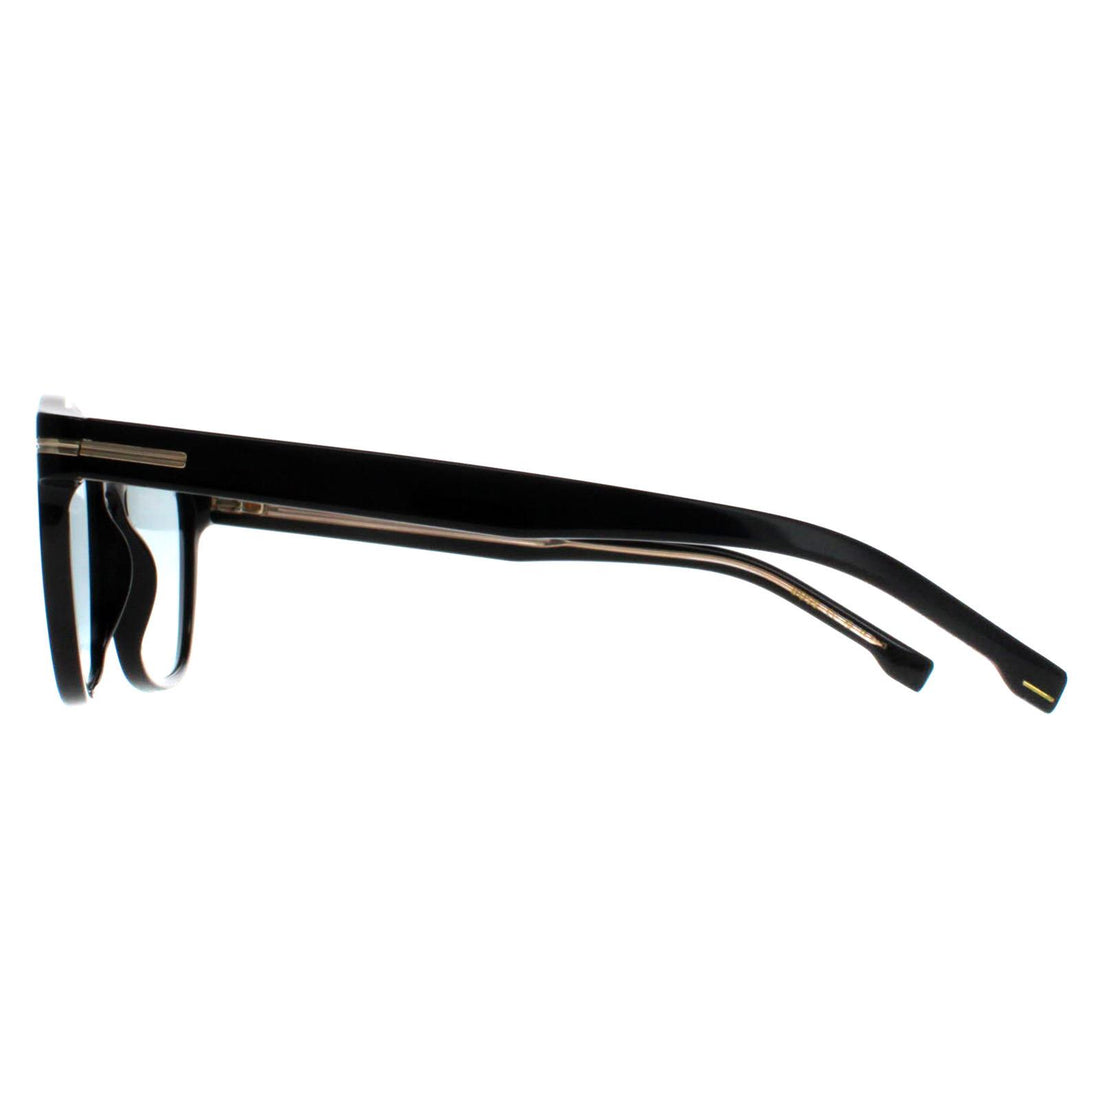 Hugo Boss Sunglasses BOSS 1505/S 807 1N Black Azure Photochromic